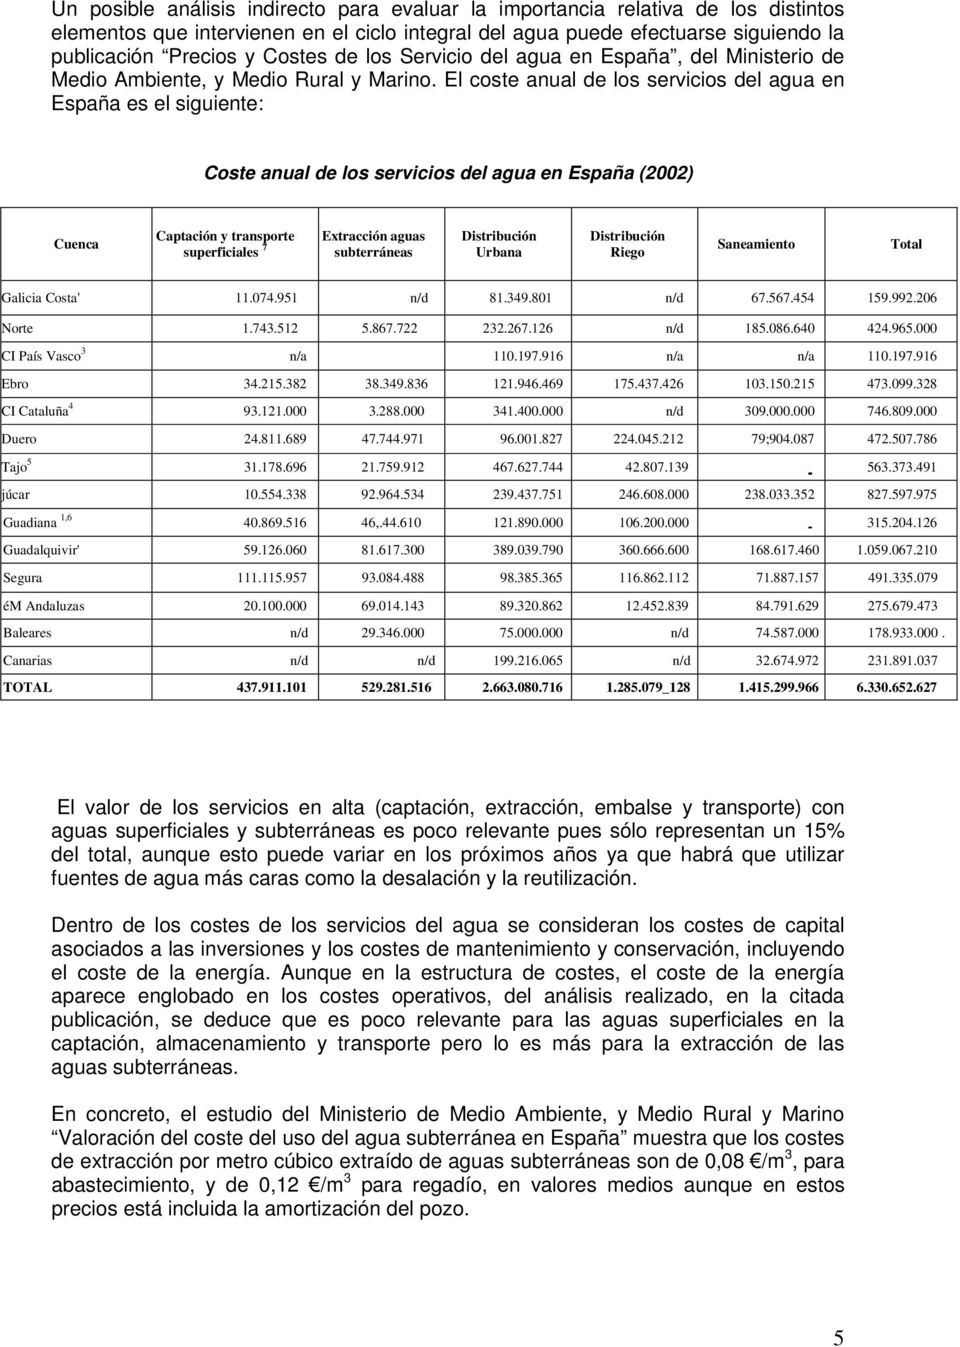 El coste anual de los servicios del agua en España es el siguiente: Coste anual de los servicios del agua en España (2002) Cuenca Captación y transporte superficiales 7 Extracción aguas subterráneas